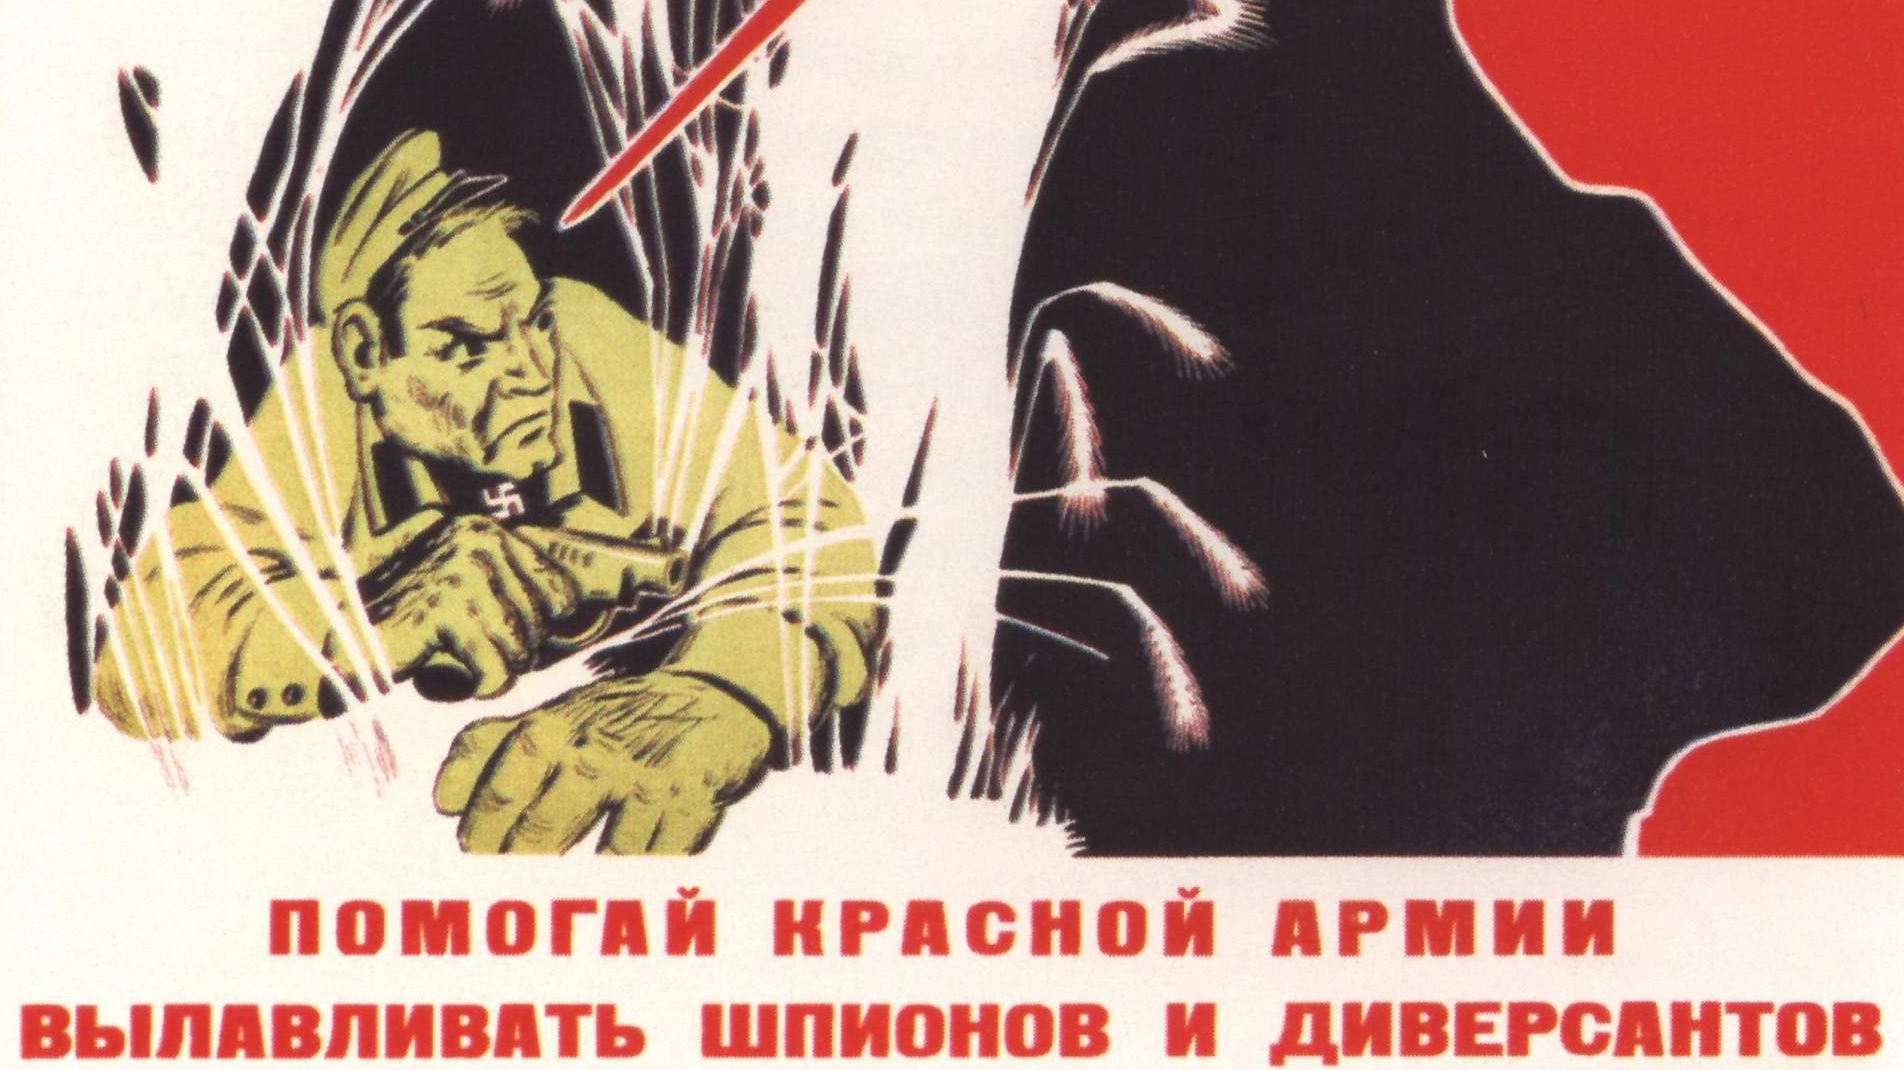 Павел Вандышев. Плакат «Помогай Красной Армии вылавливать шпионов и диверсантов» (фрагмент). 1941